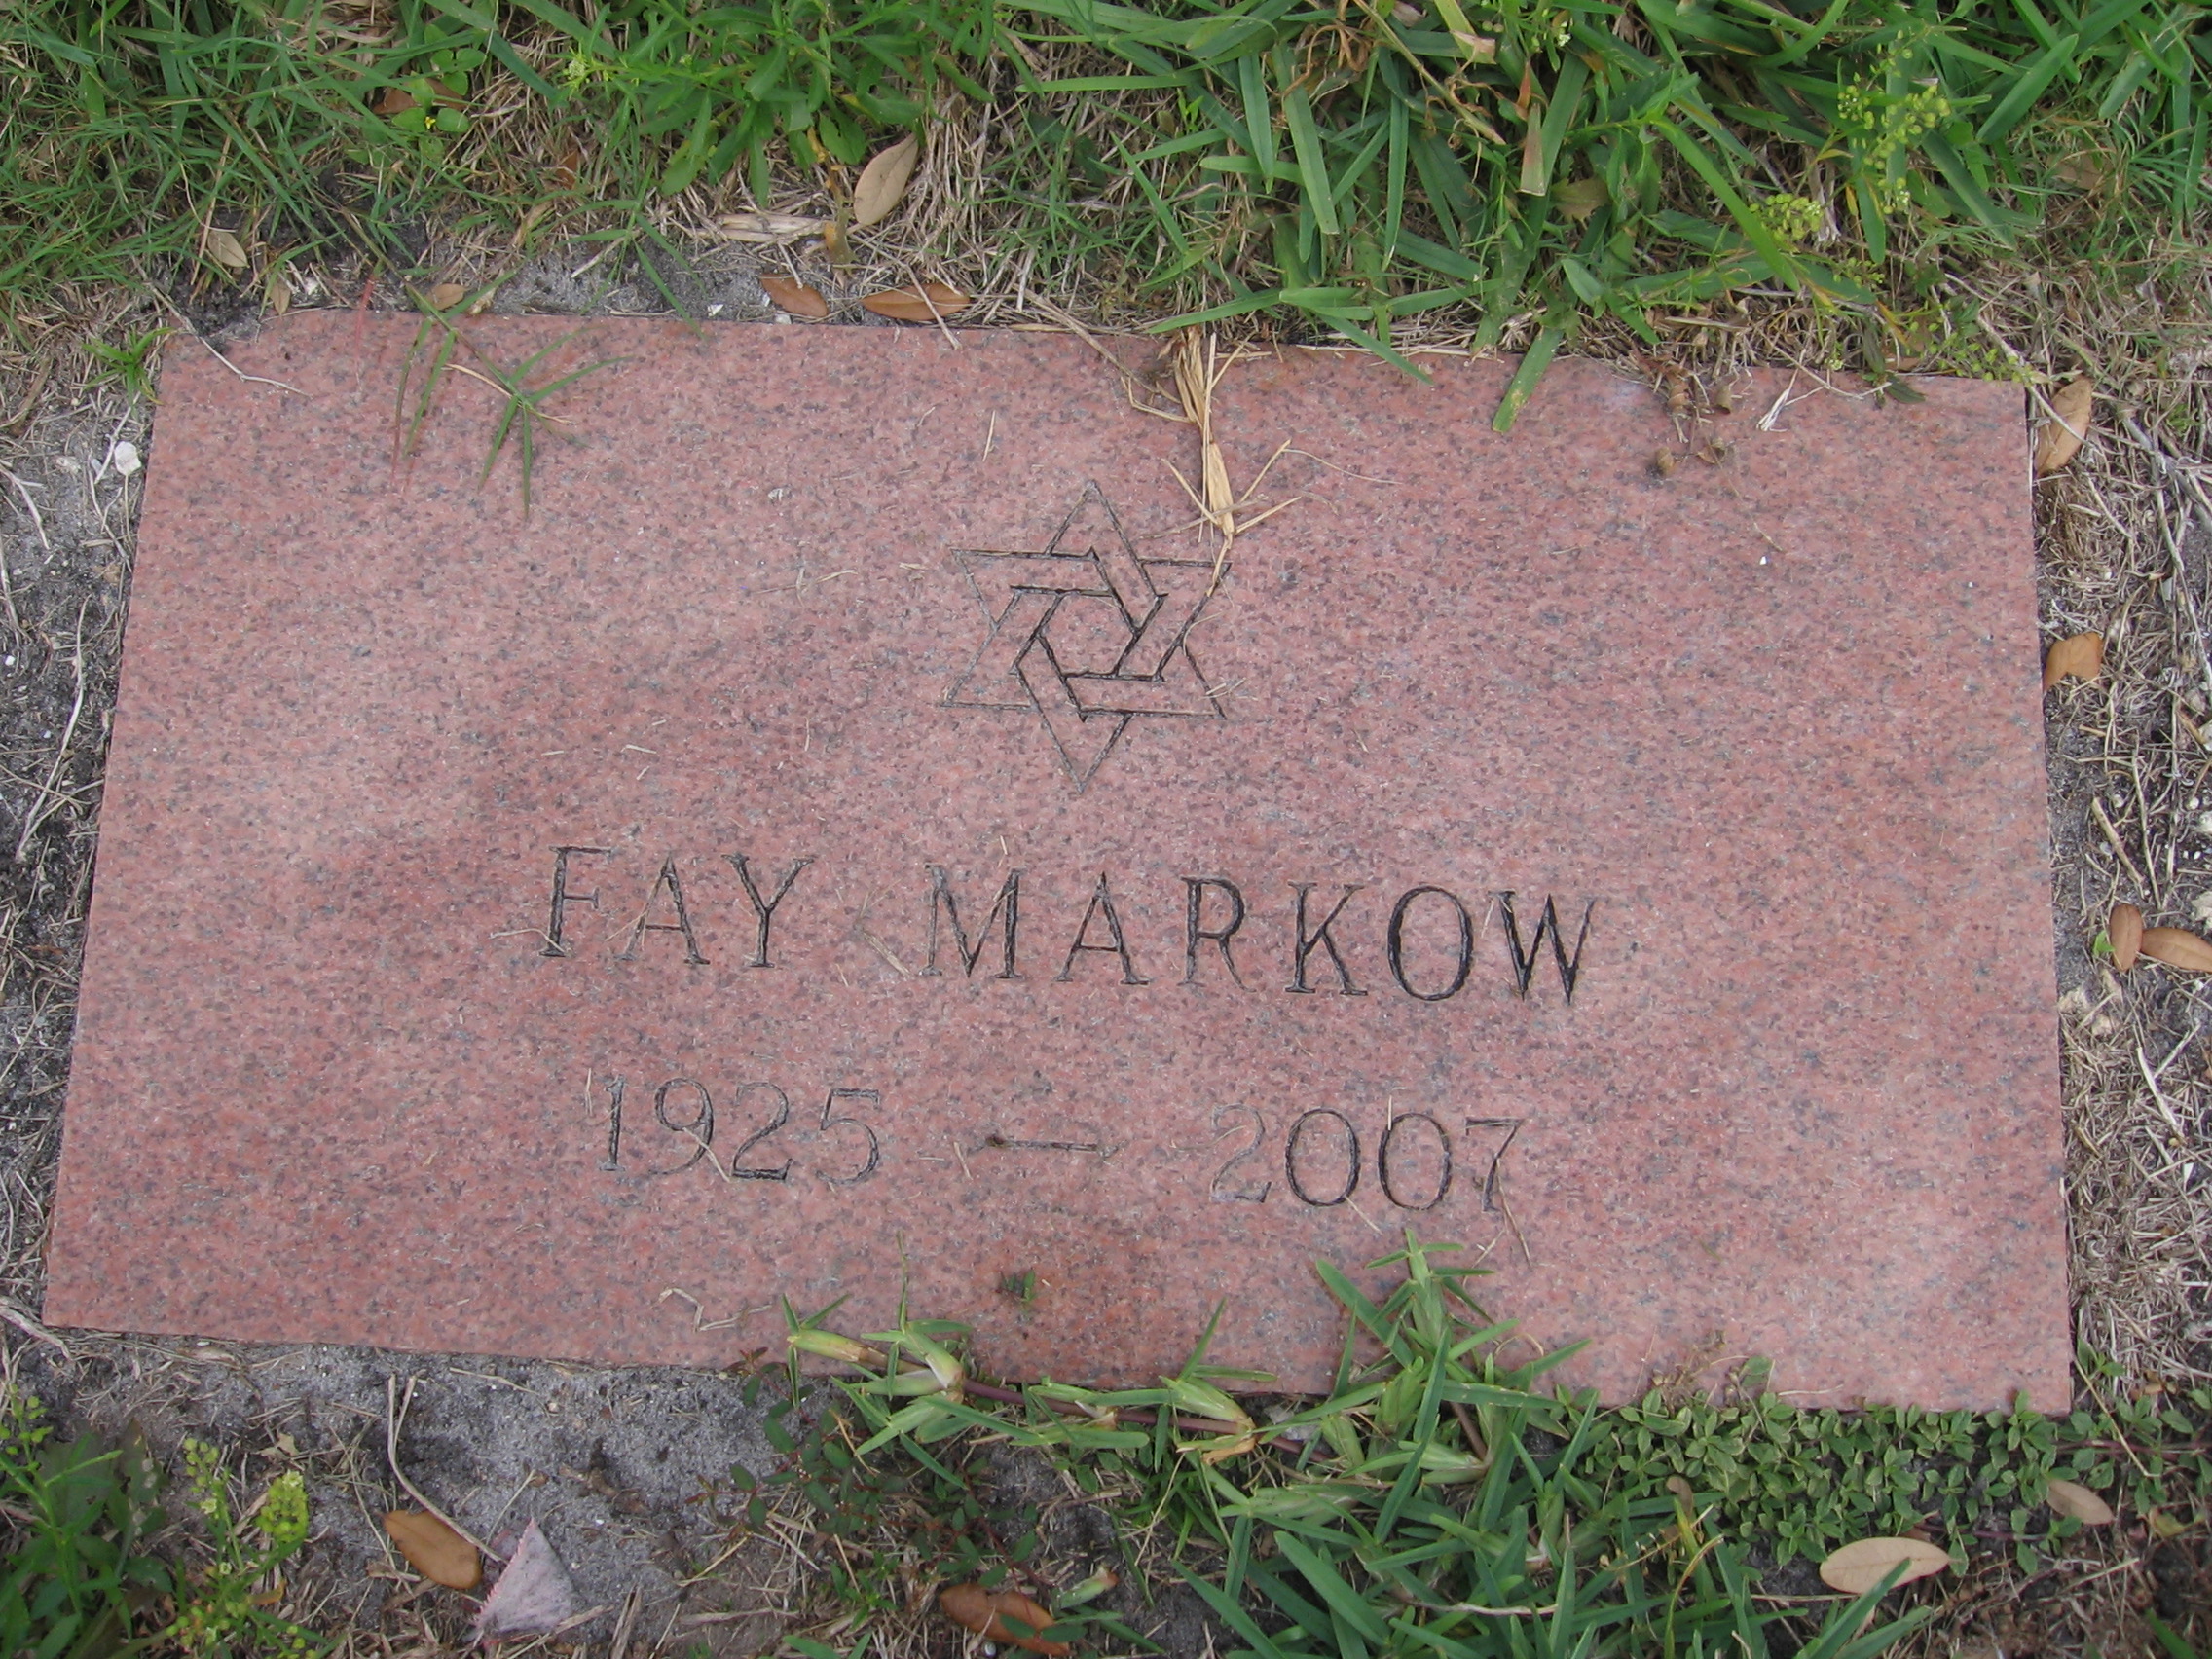 Fay Markow